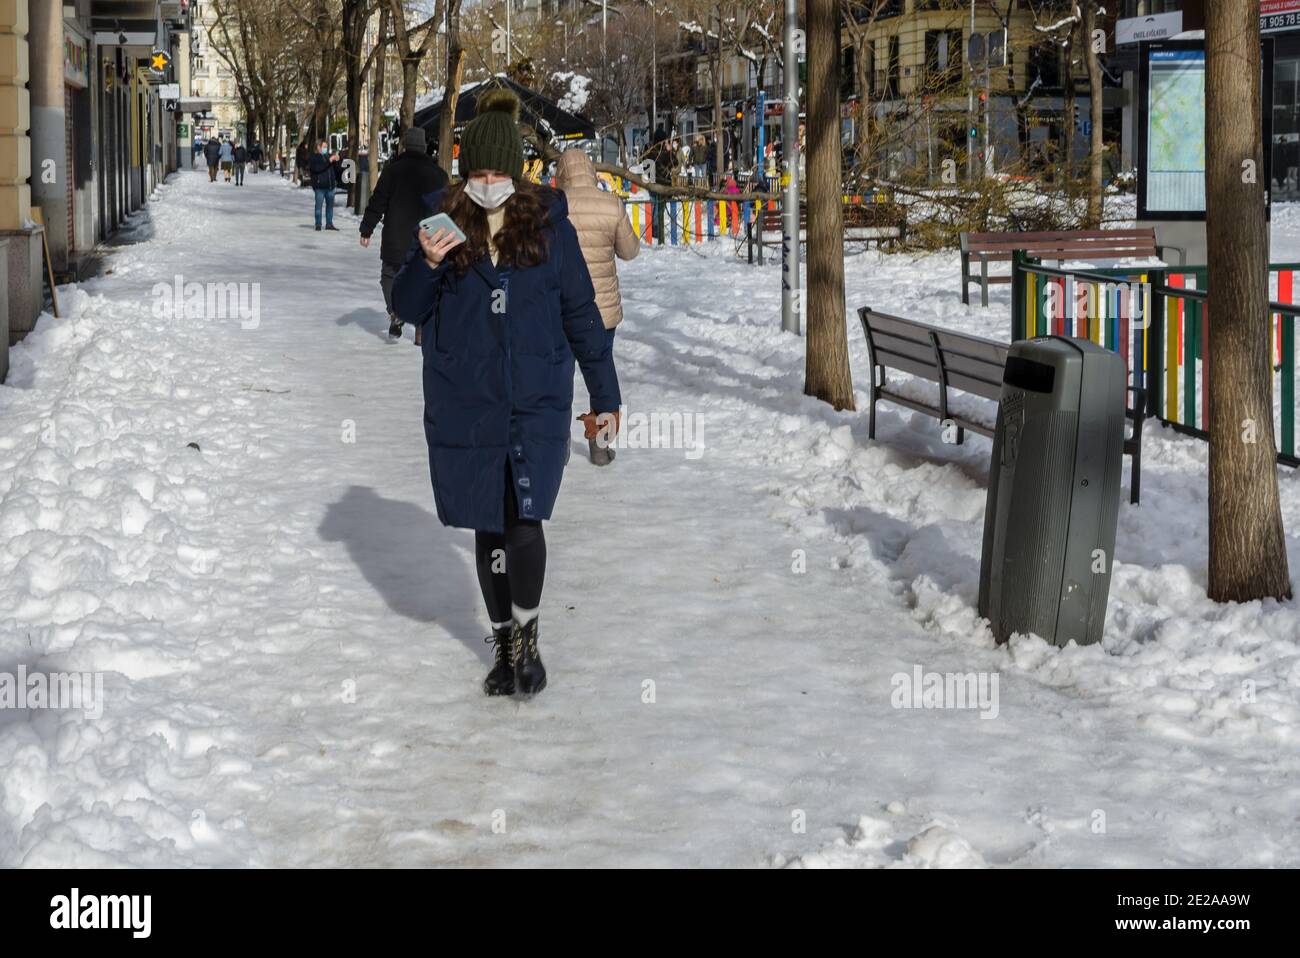 Madrid, Espagne. 10 janvier 2021. Vue d'une jeune femme dans la rue Fuencarral après la neige de tempête. Crédit: Enrique Davó. Banque D'Images